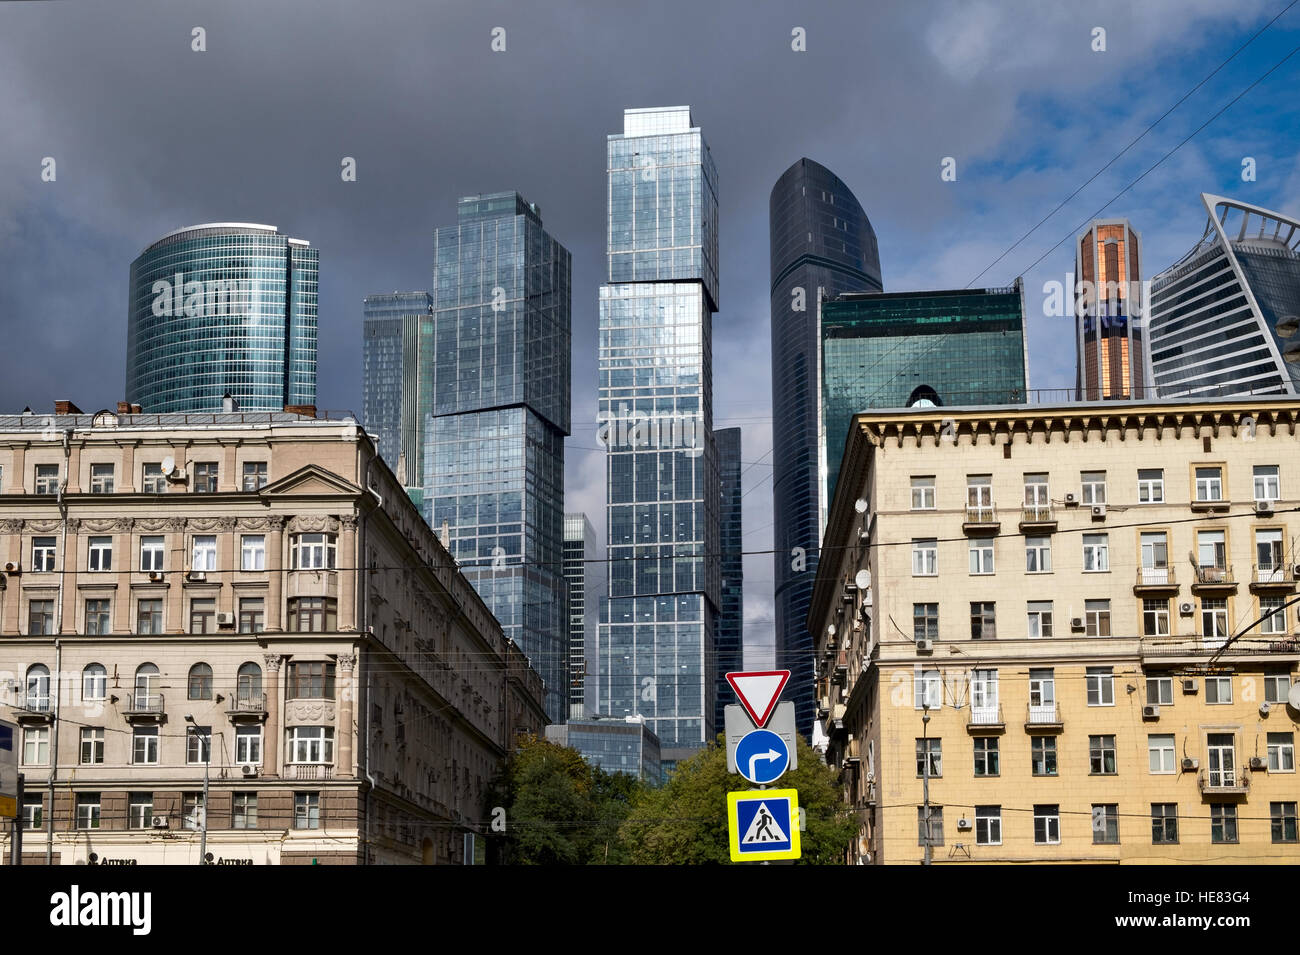 Mosca, Russia - 24 settembre: grattacieli di Moscow International Business Center tra le vecchie case a Mosca, in Russia, il 24 settembre 2016 Foto Stock